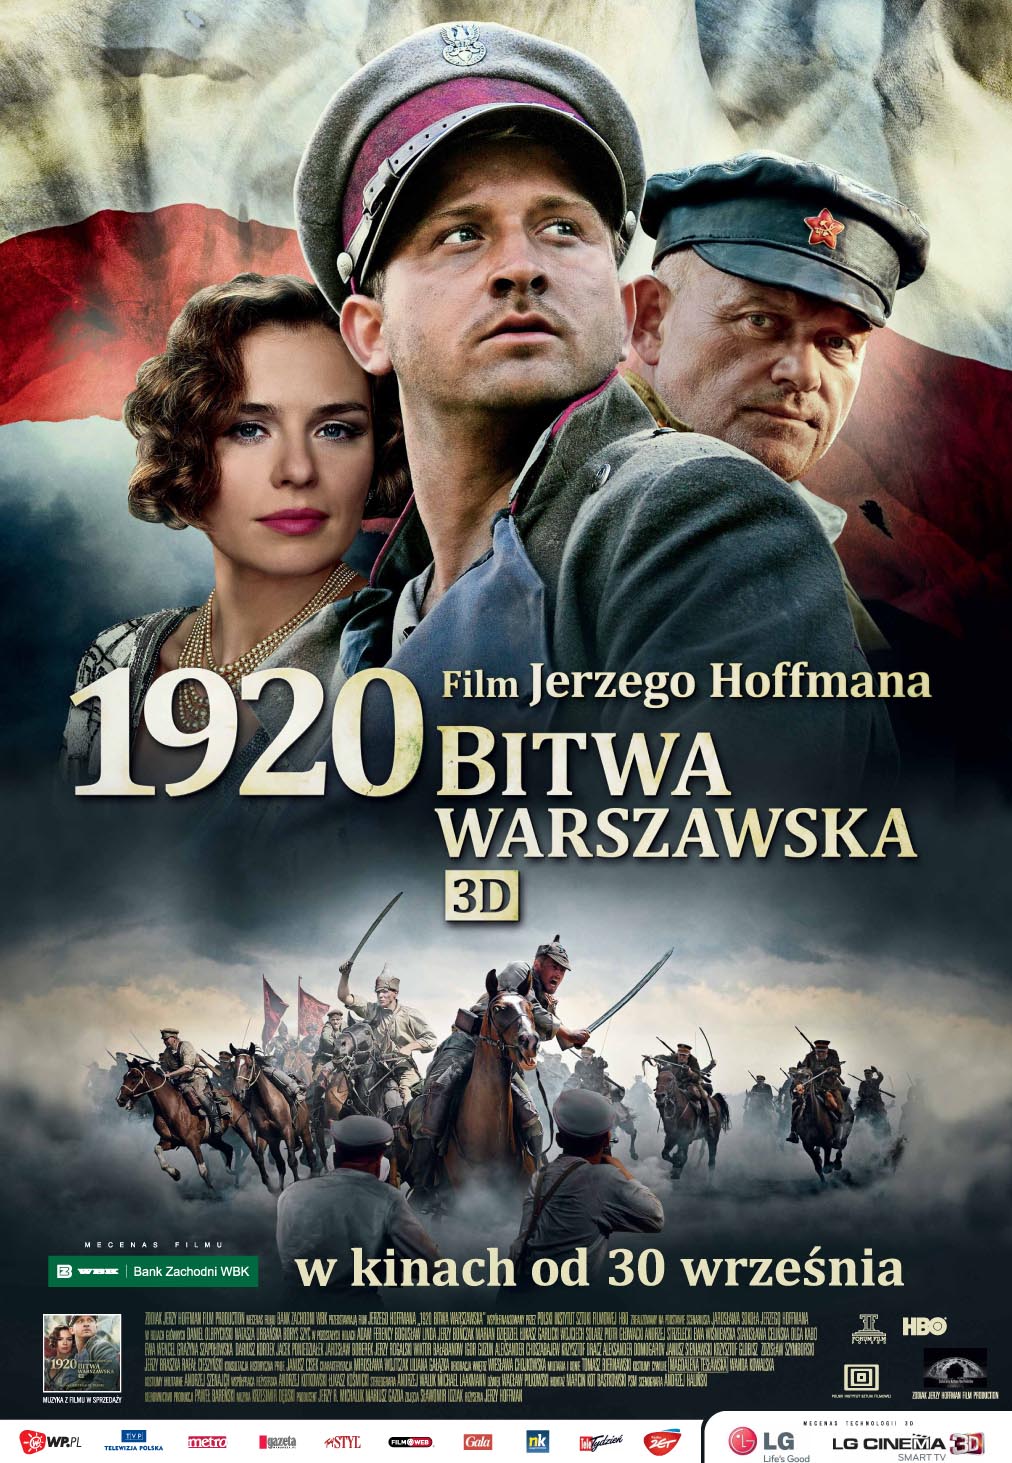 华沙之战1920.Battle.of.Warsaw.1920.2011.POL.1080p.BluRay.REMUX.AVC.DTS-HD.MA.5.1-Asmo 21.35GB